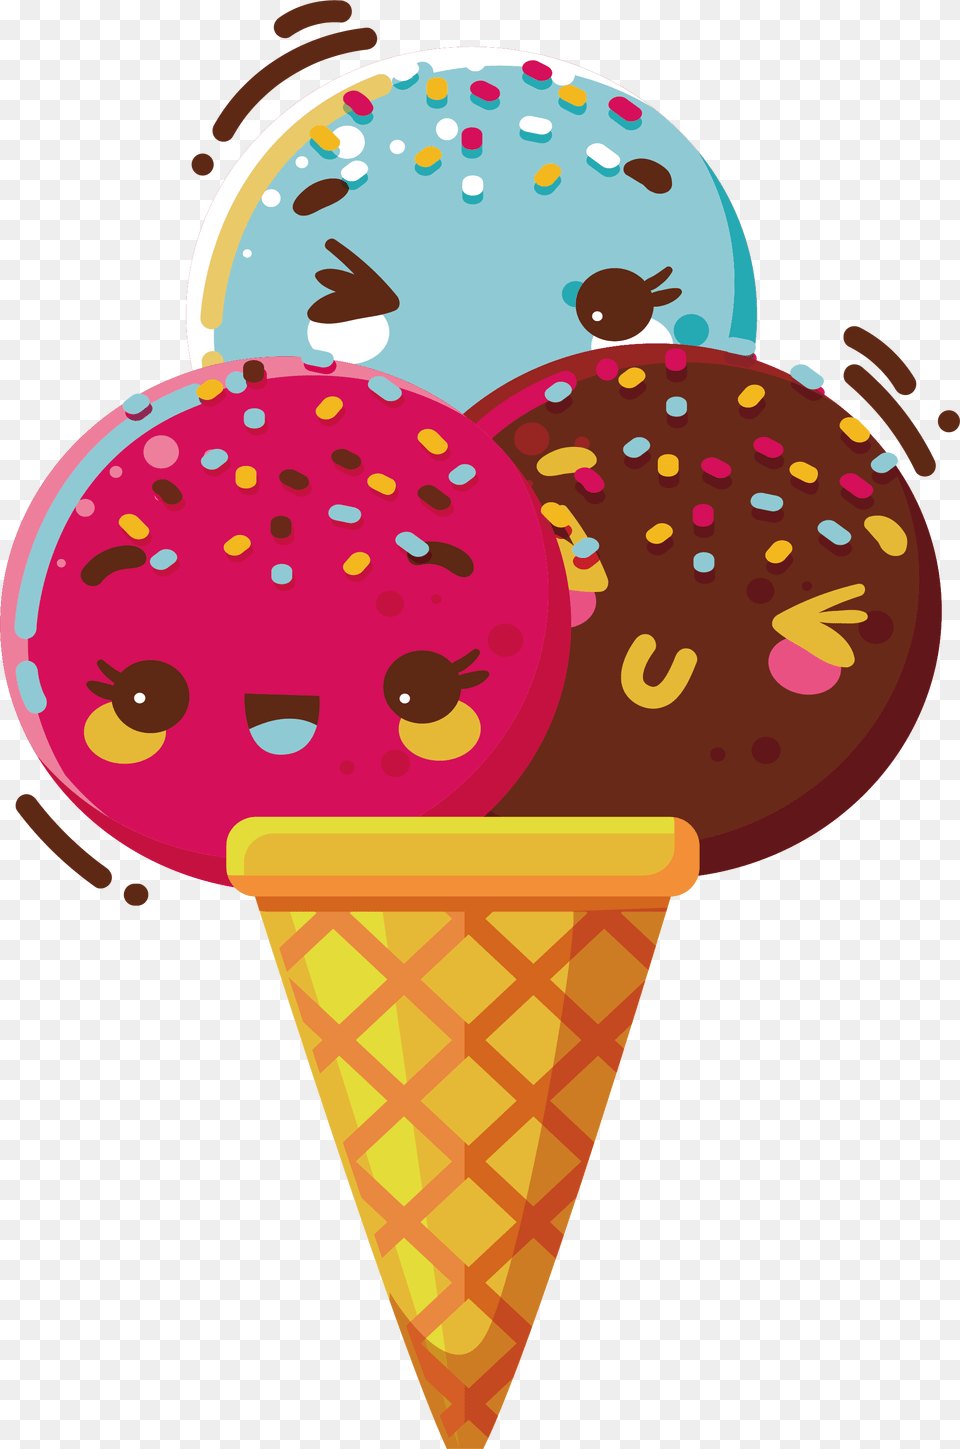 Ice Cream Cone Chocolate Ice Cream Cone, Dessert, Food, Ice Cream Free Png